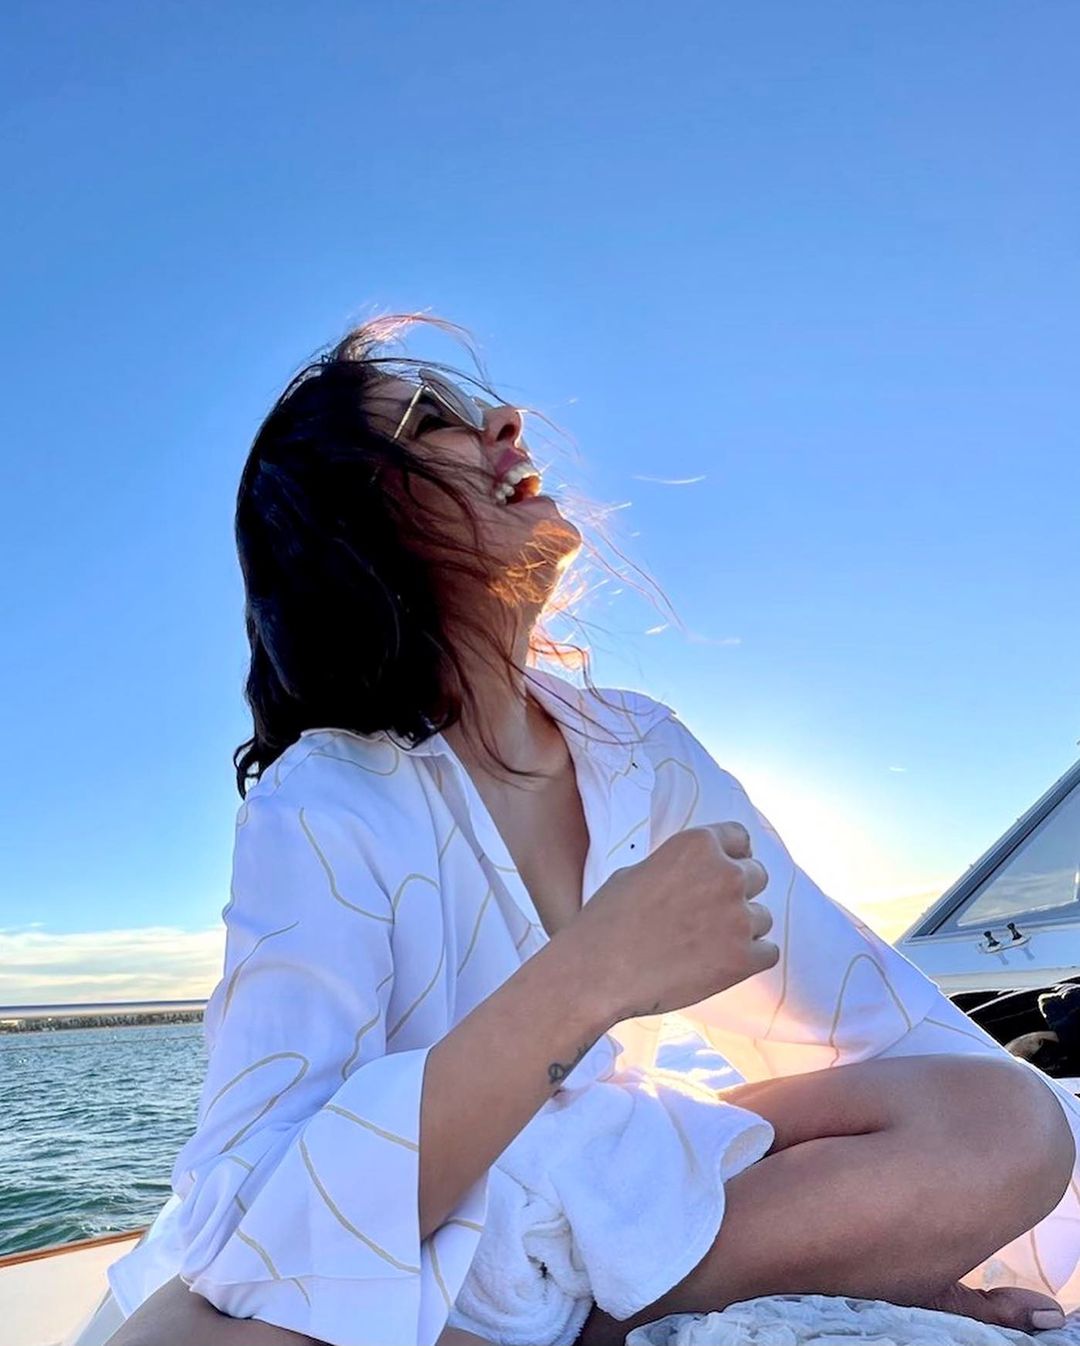 Fotos n°2 : Priyanka Chopra est en un barco!